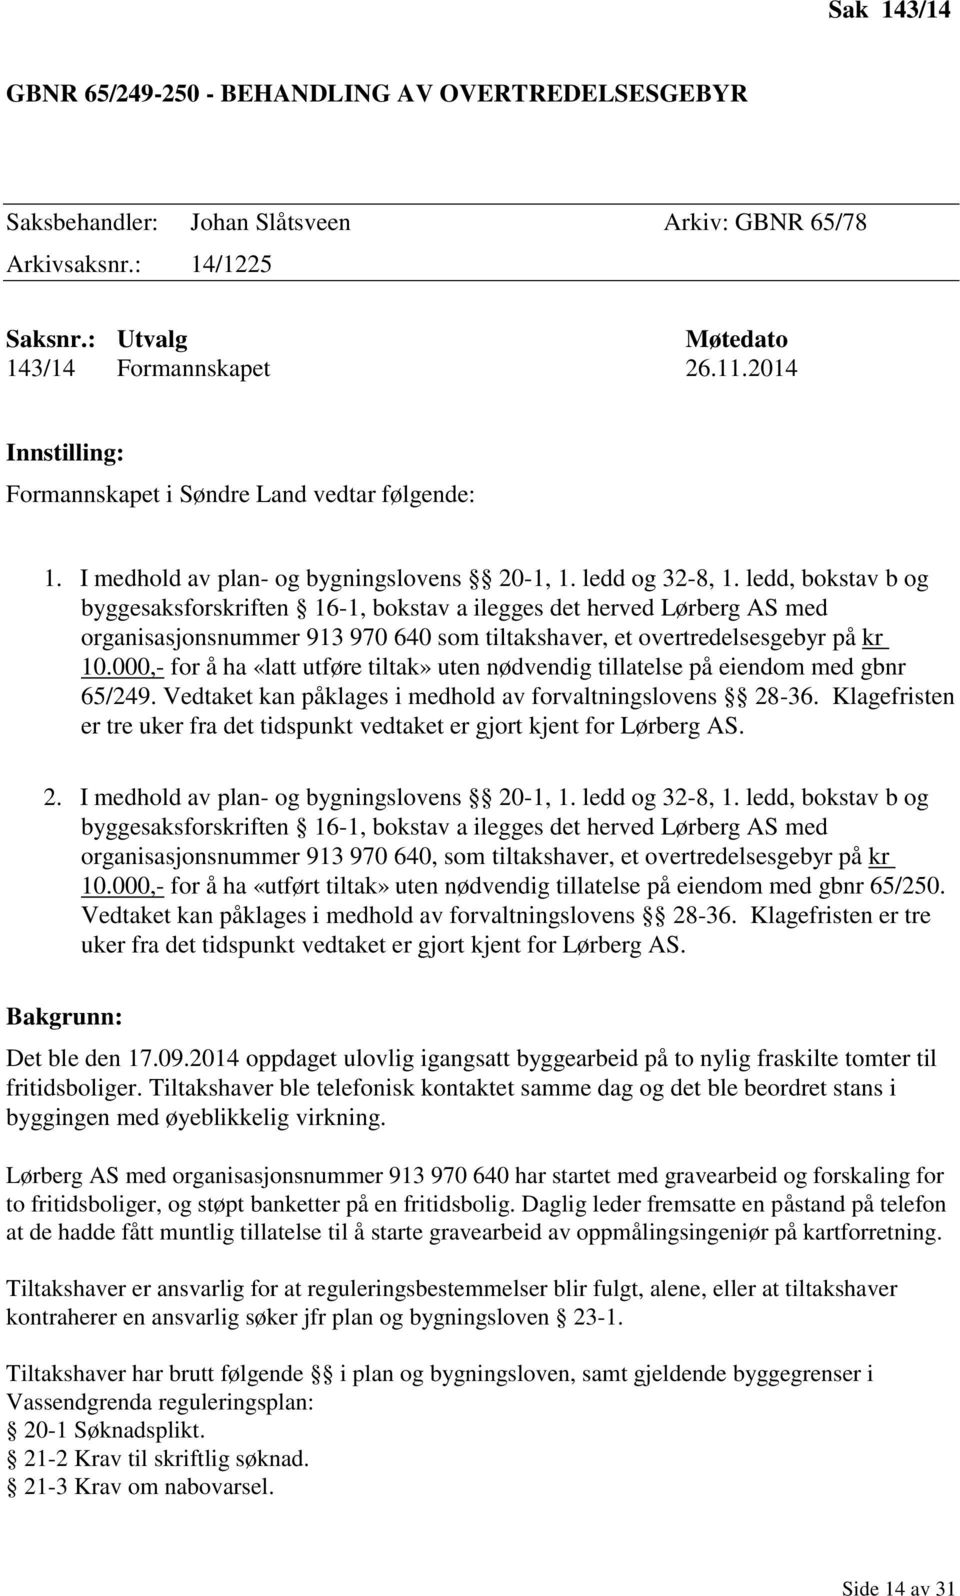 ledd, bokstav b og byggesaksforskriften 16-1, bokstav a ilegges det herved Lørberg AS med organisasjonsnummer 913 970 640 som tiltakshaver, et overtredelsesgebyr på kr 10.